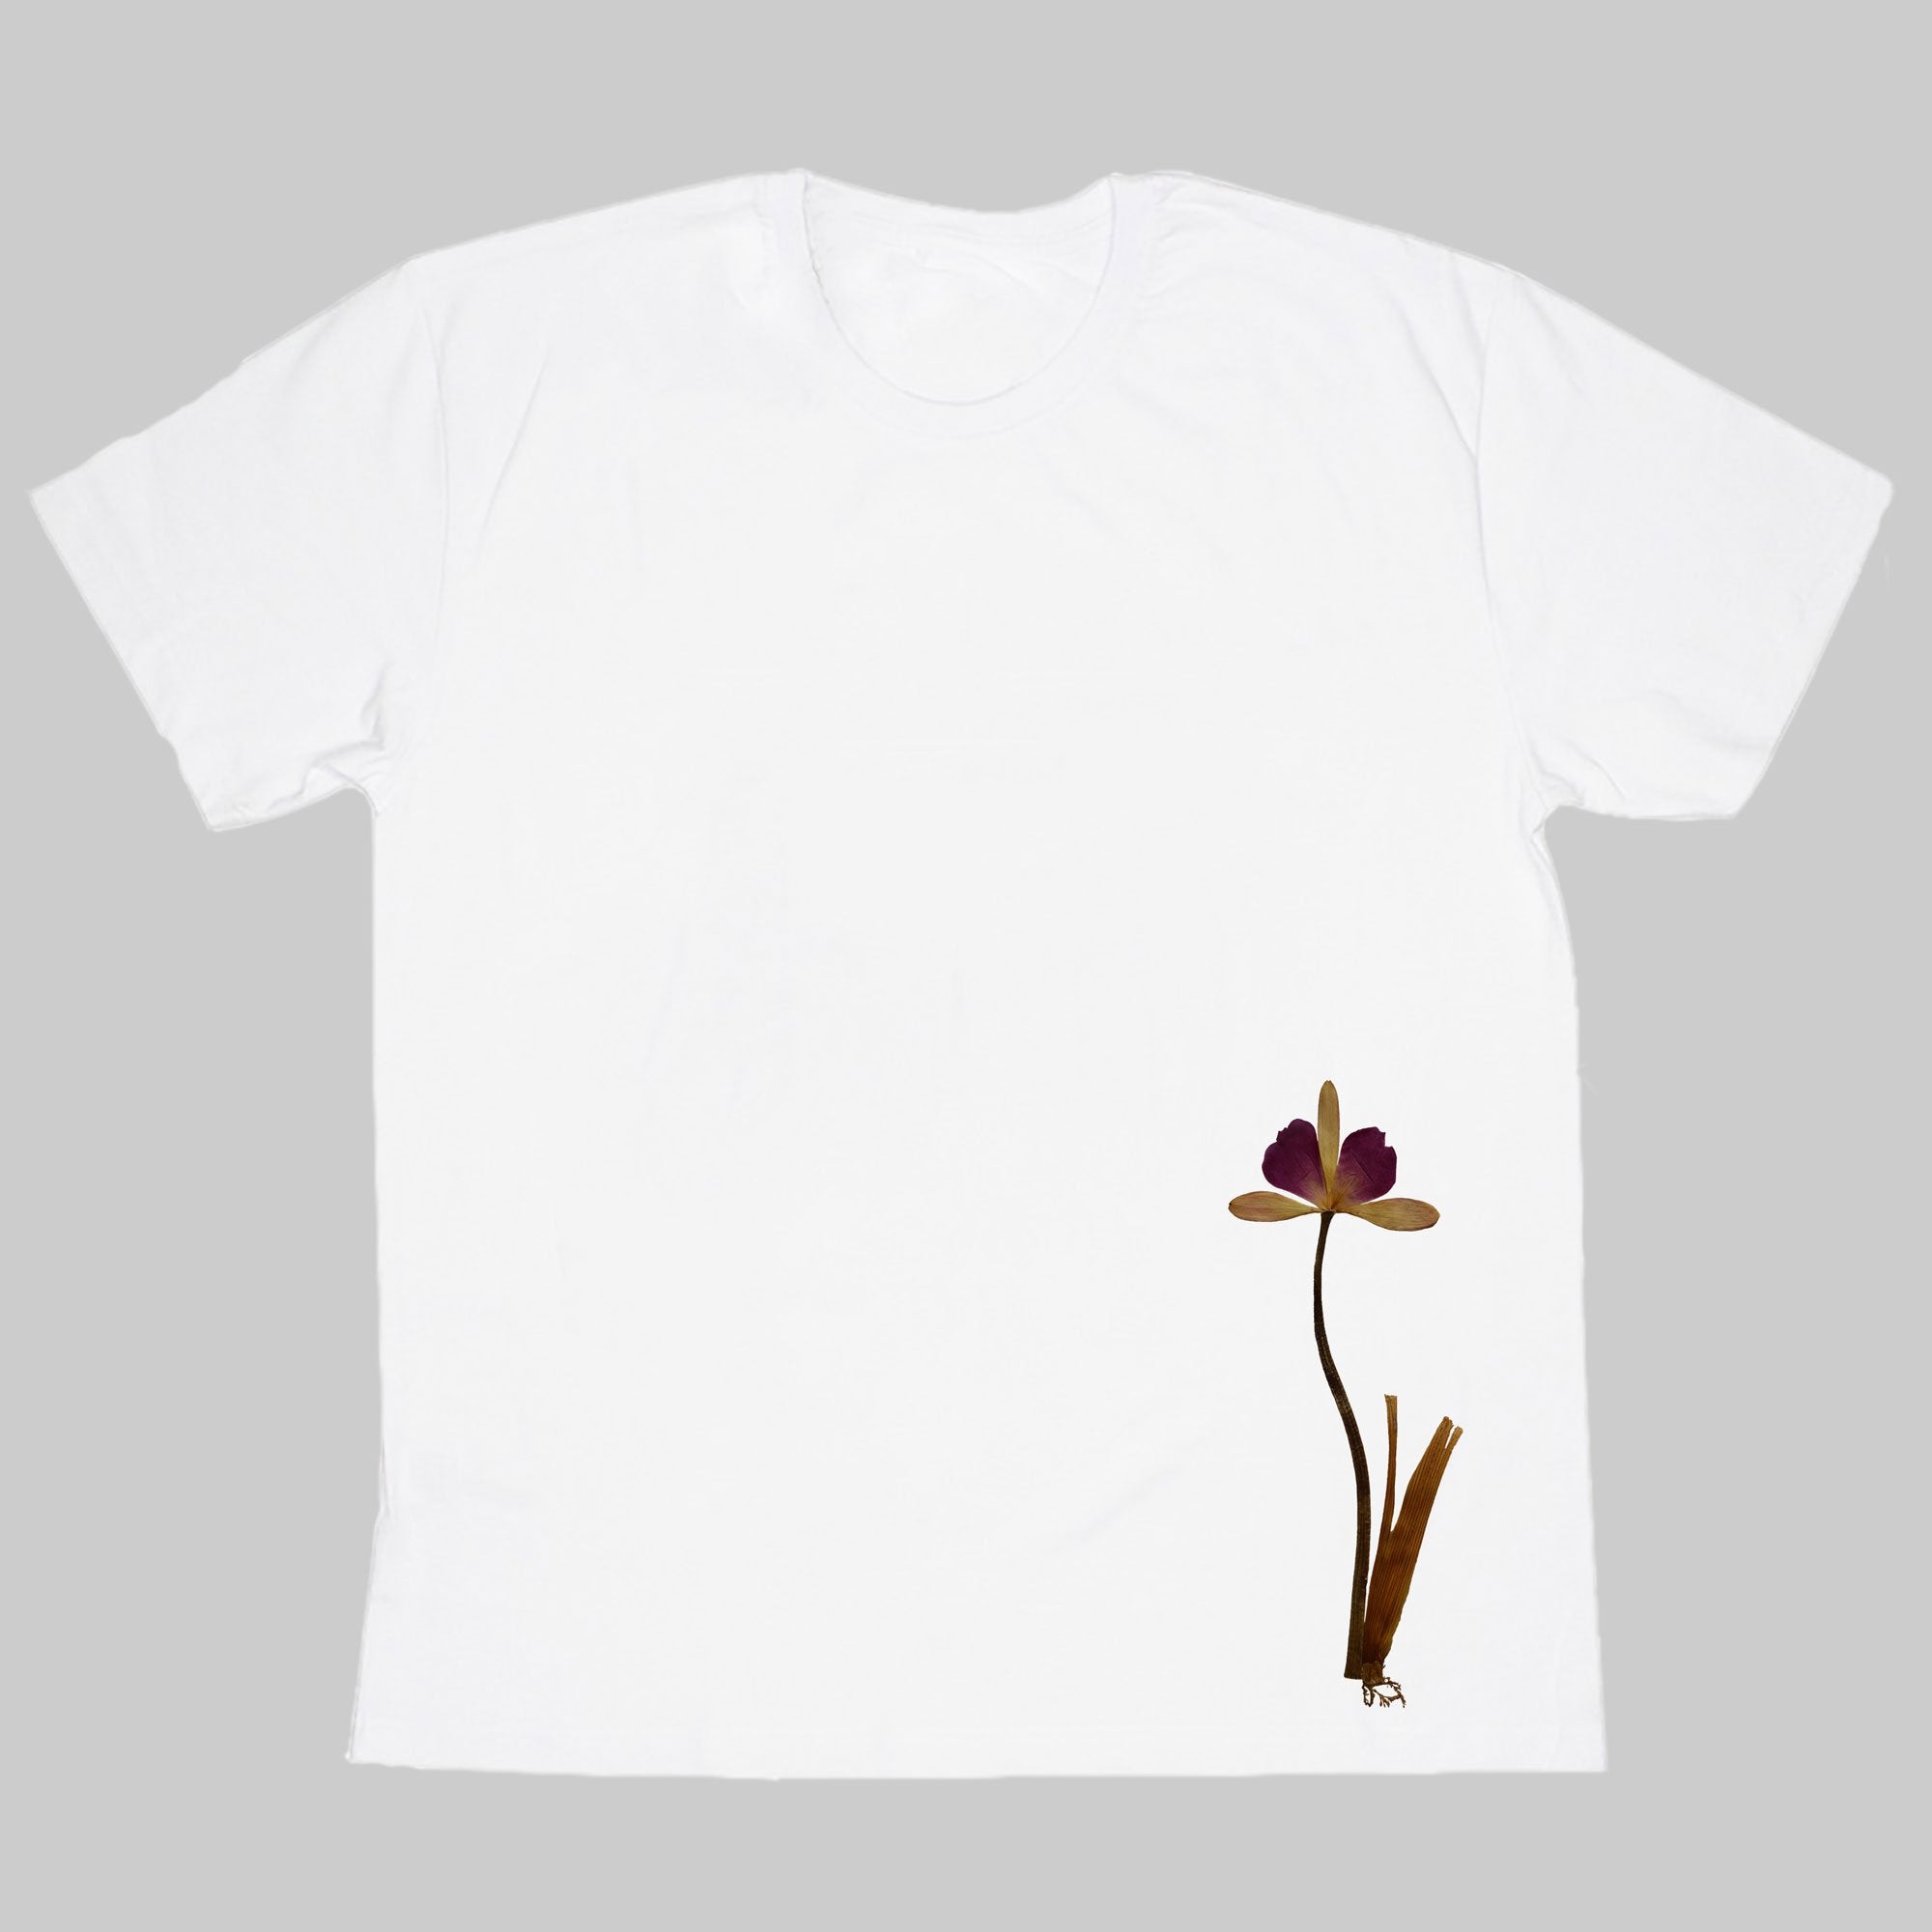 Flower-Like Ornament T-Shirt (Men's)